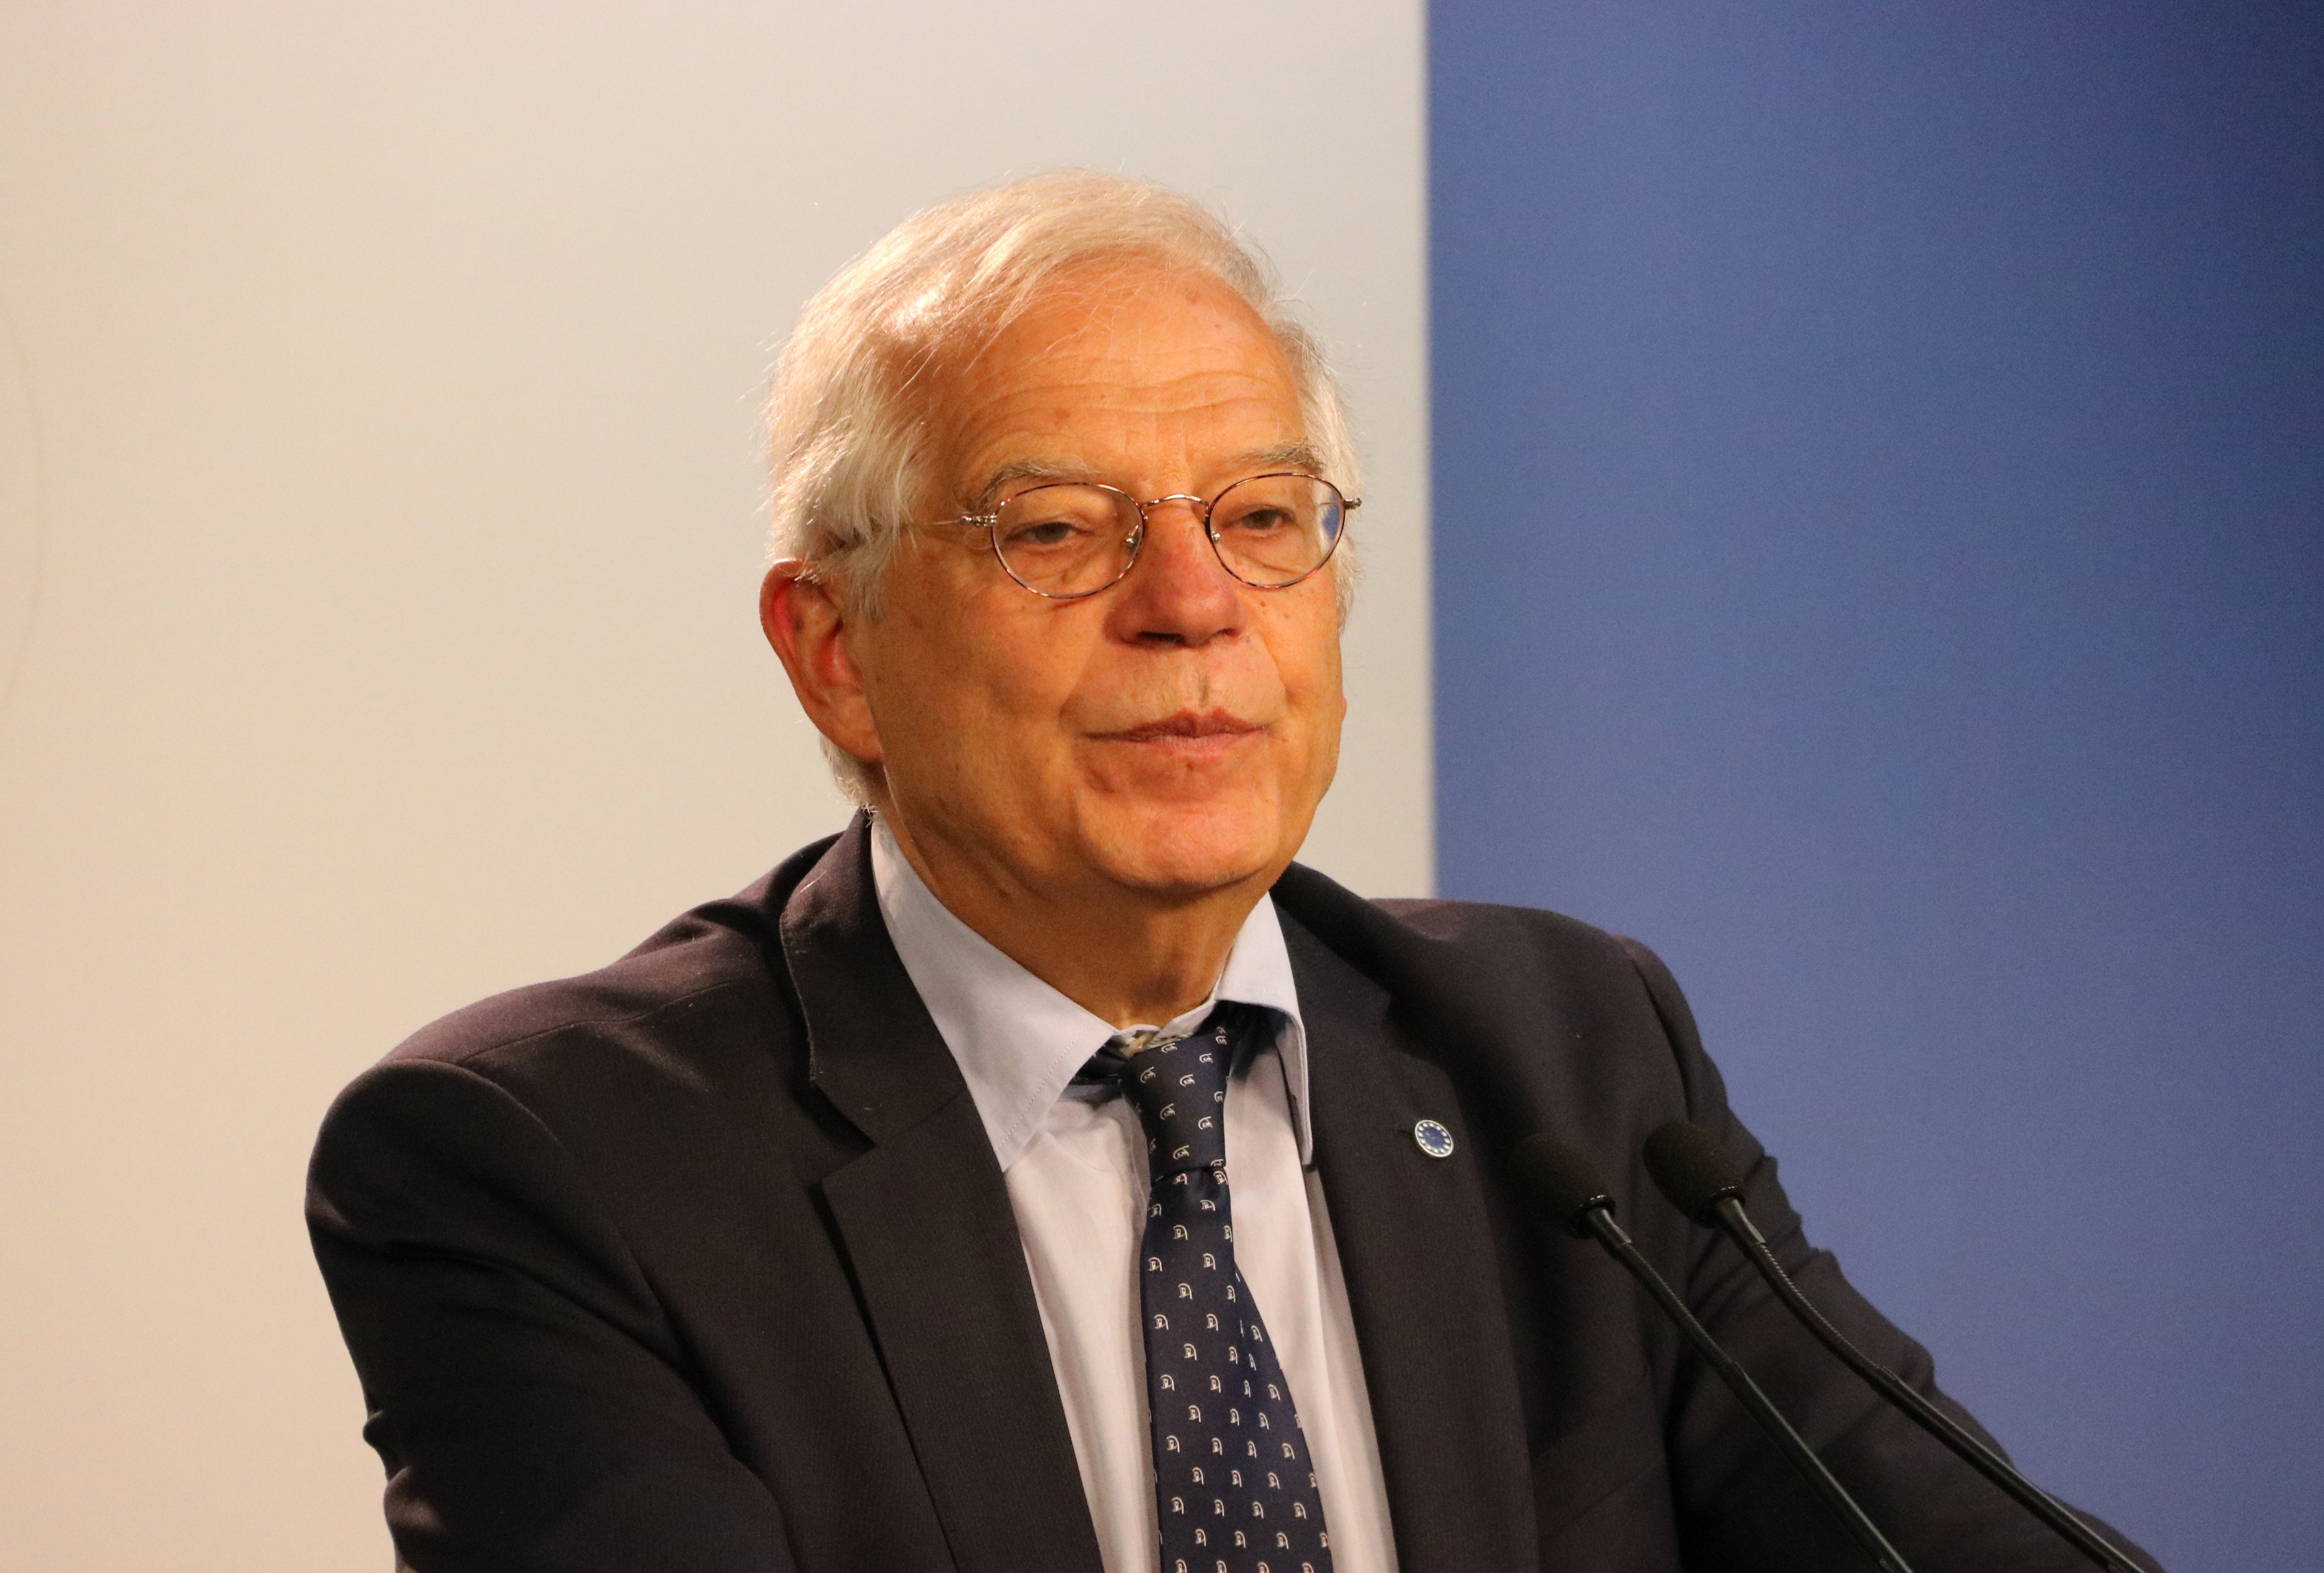 Borrell és el ministre més ric, amb un patrimoni de 2,8 milions